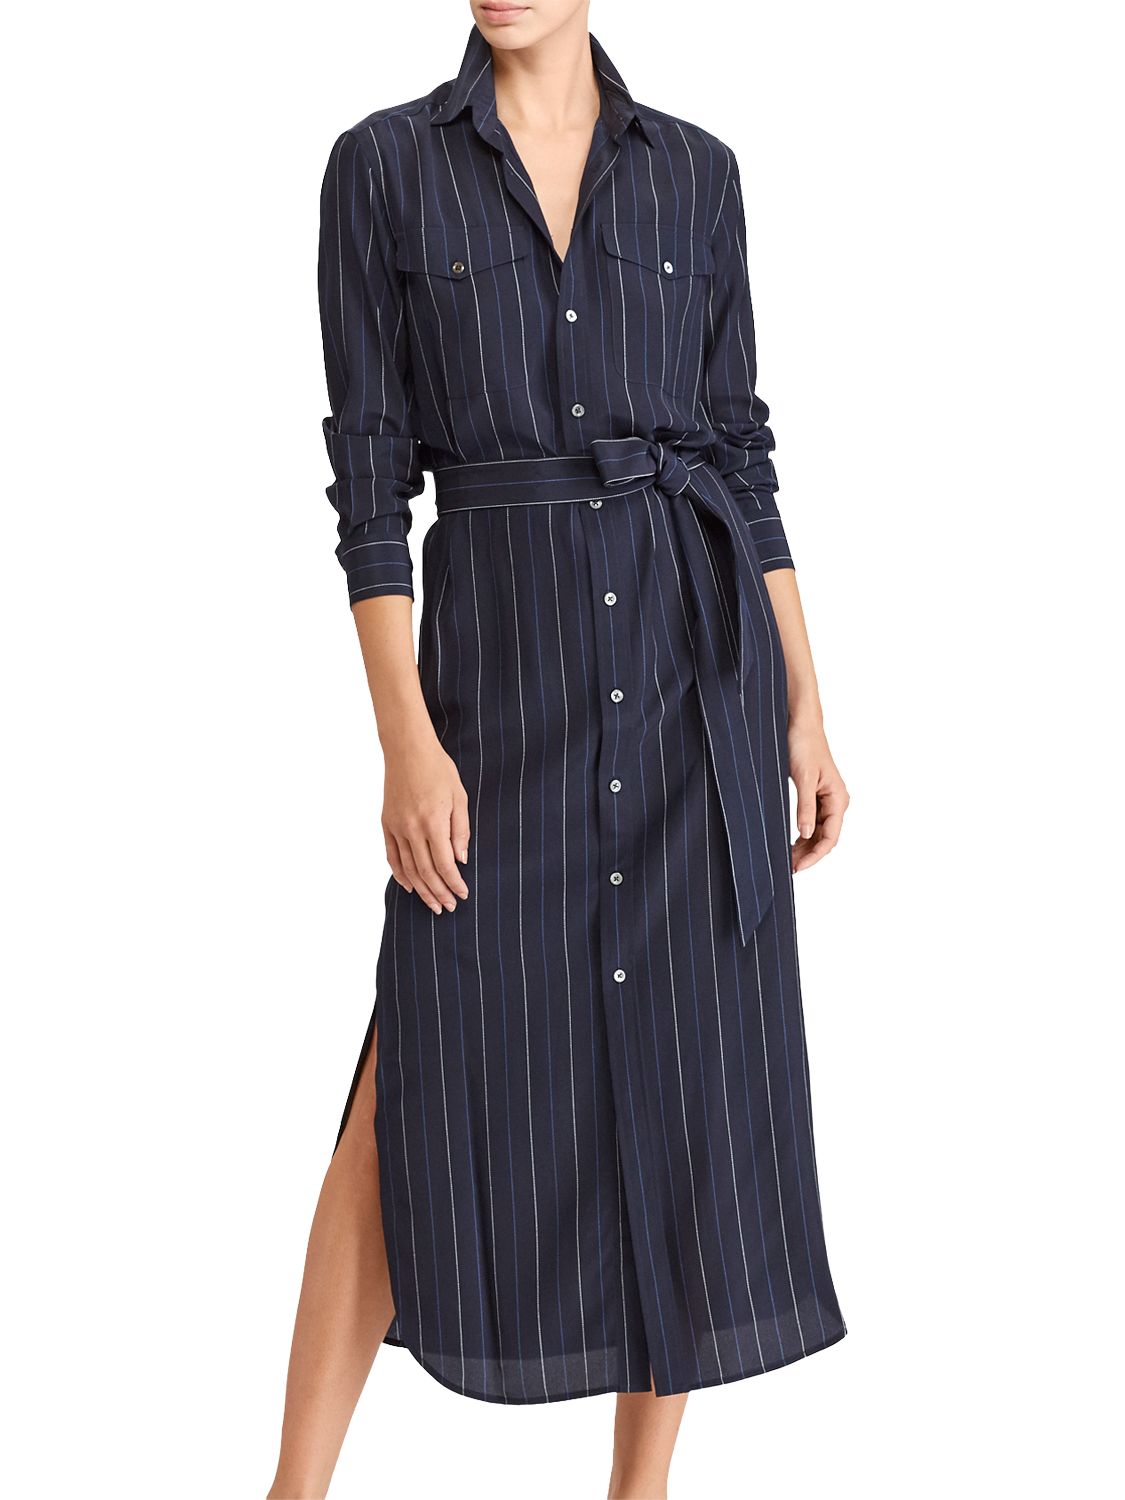 Polo Ralph Lauren Pinstripe Silk Shirt Dress, Navy at John Lewis & Partners